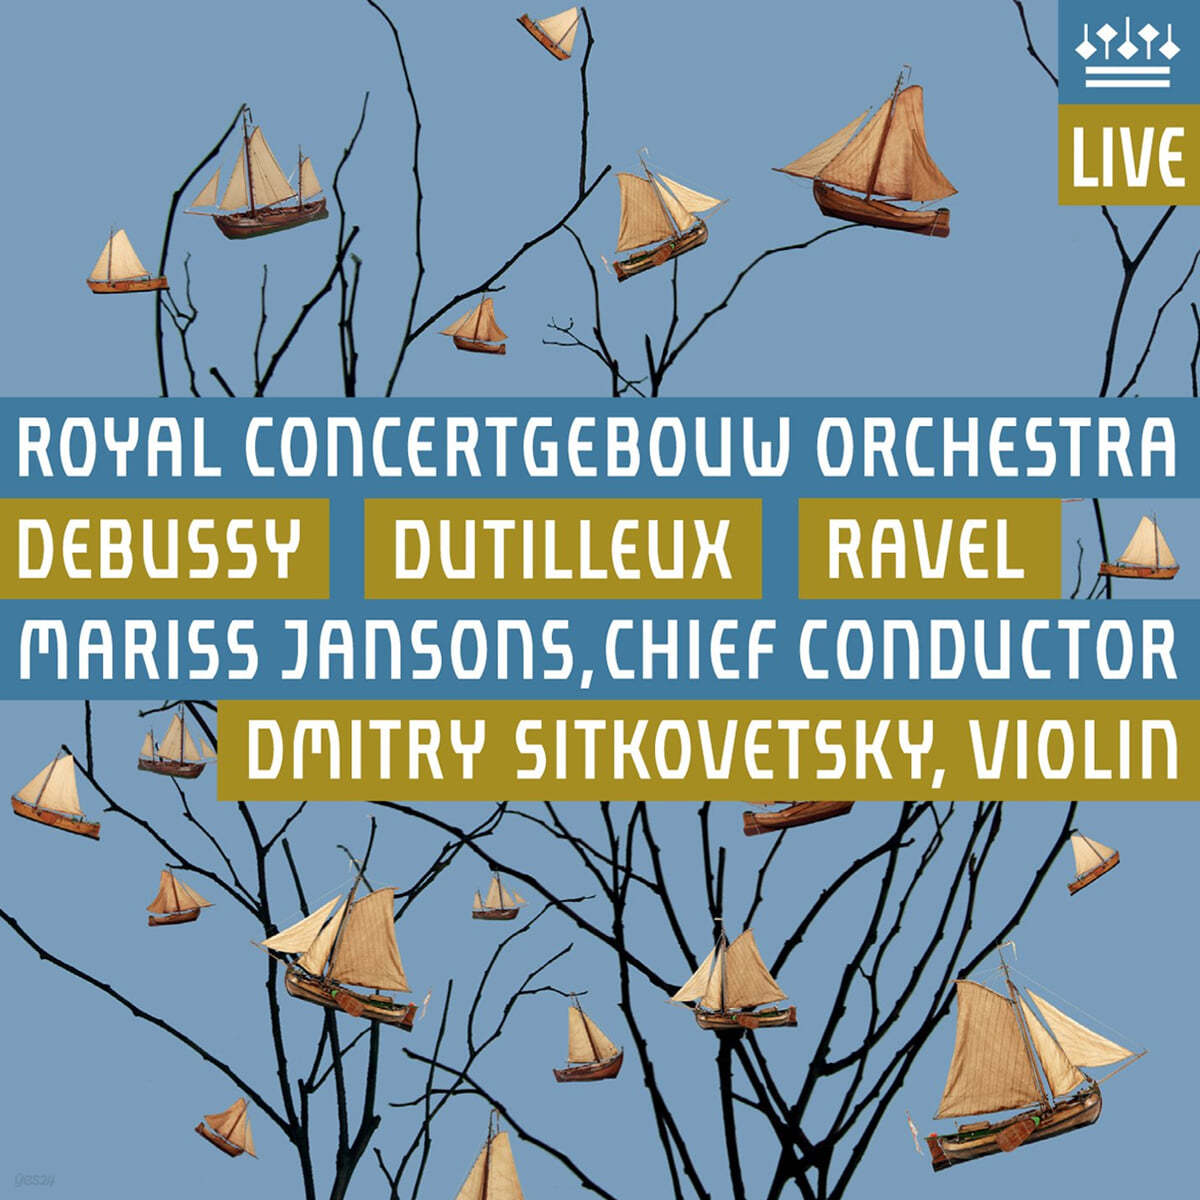 Mariss Jansons 드뷔시: 바다 / 뒤티외: 바이올린 협주곡 '꿈의 나무' / 라벨: 라 발스 (Debussy: La Mer / Dutilleux: Violin Concerto 'L'Arbre des songes' / Ravel: La Valse) 